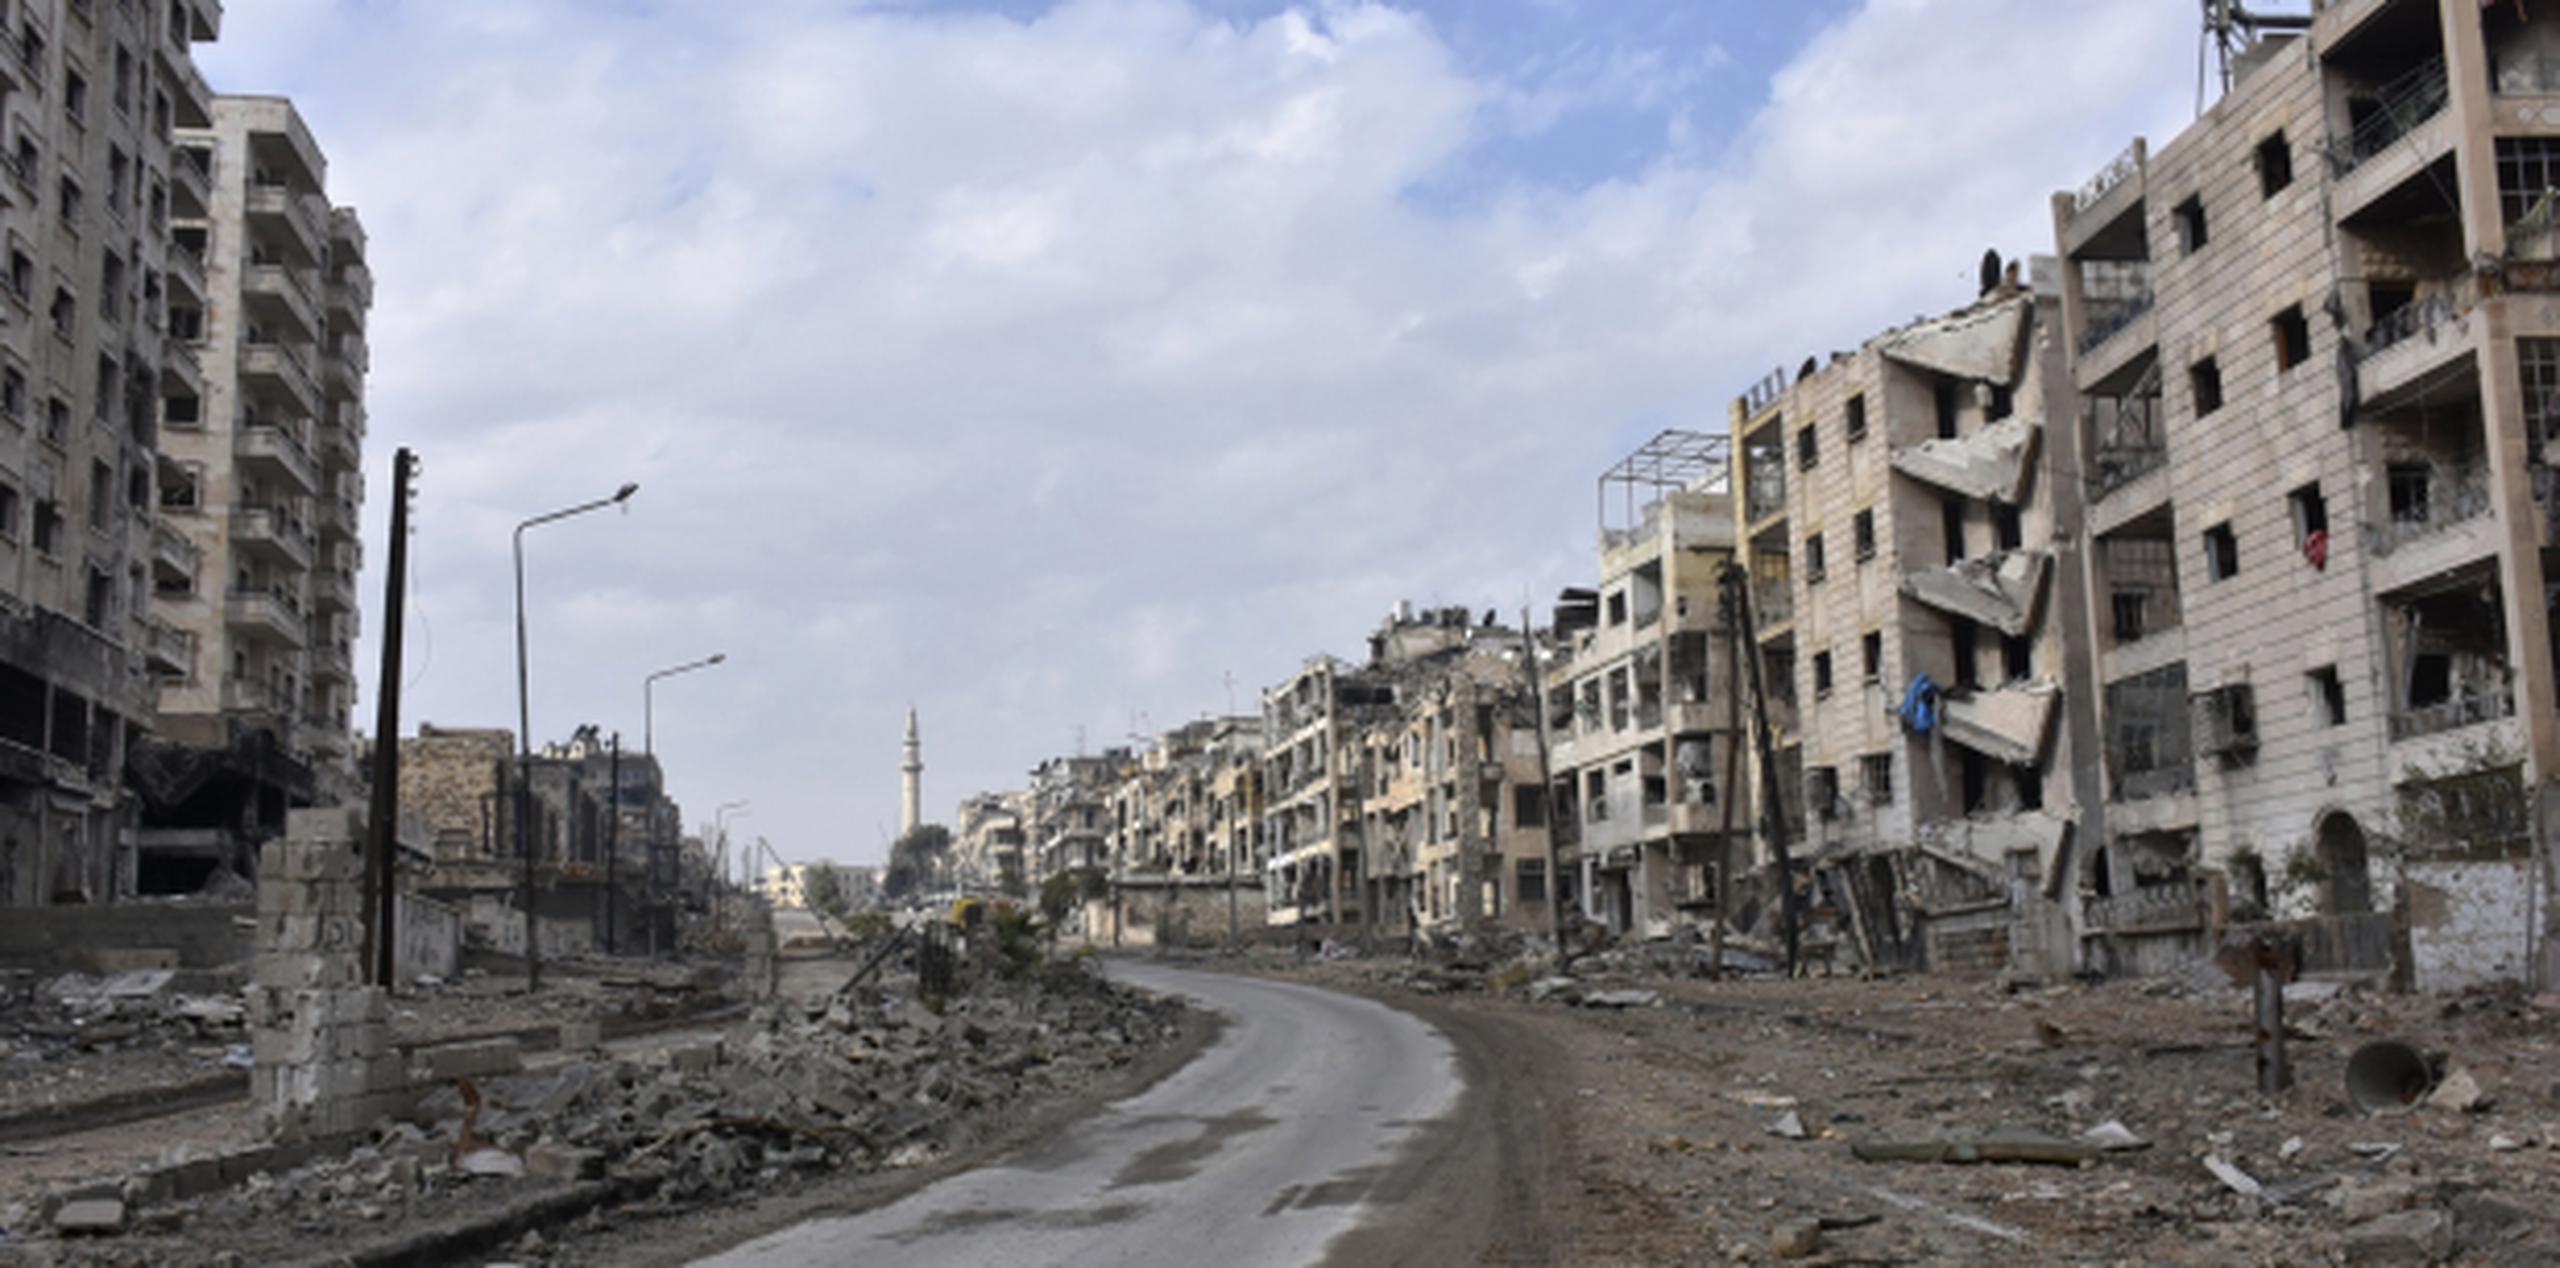 Foto de la devastación en Aleppo a causa de la guerra civil. (Prensa Asociada)